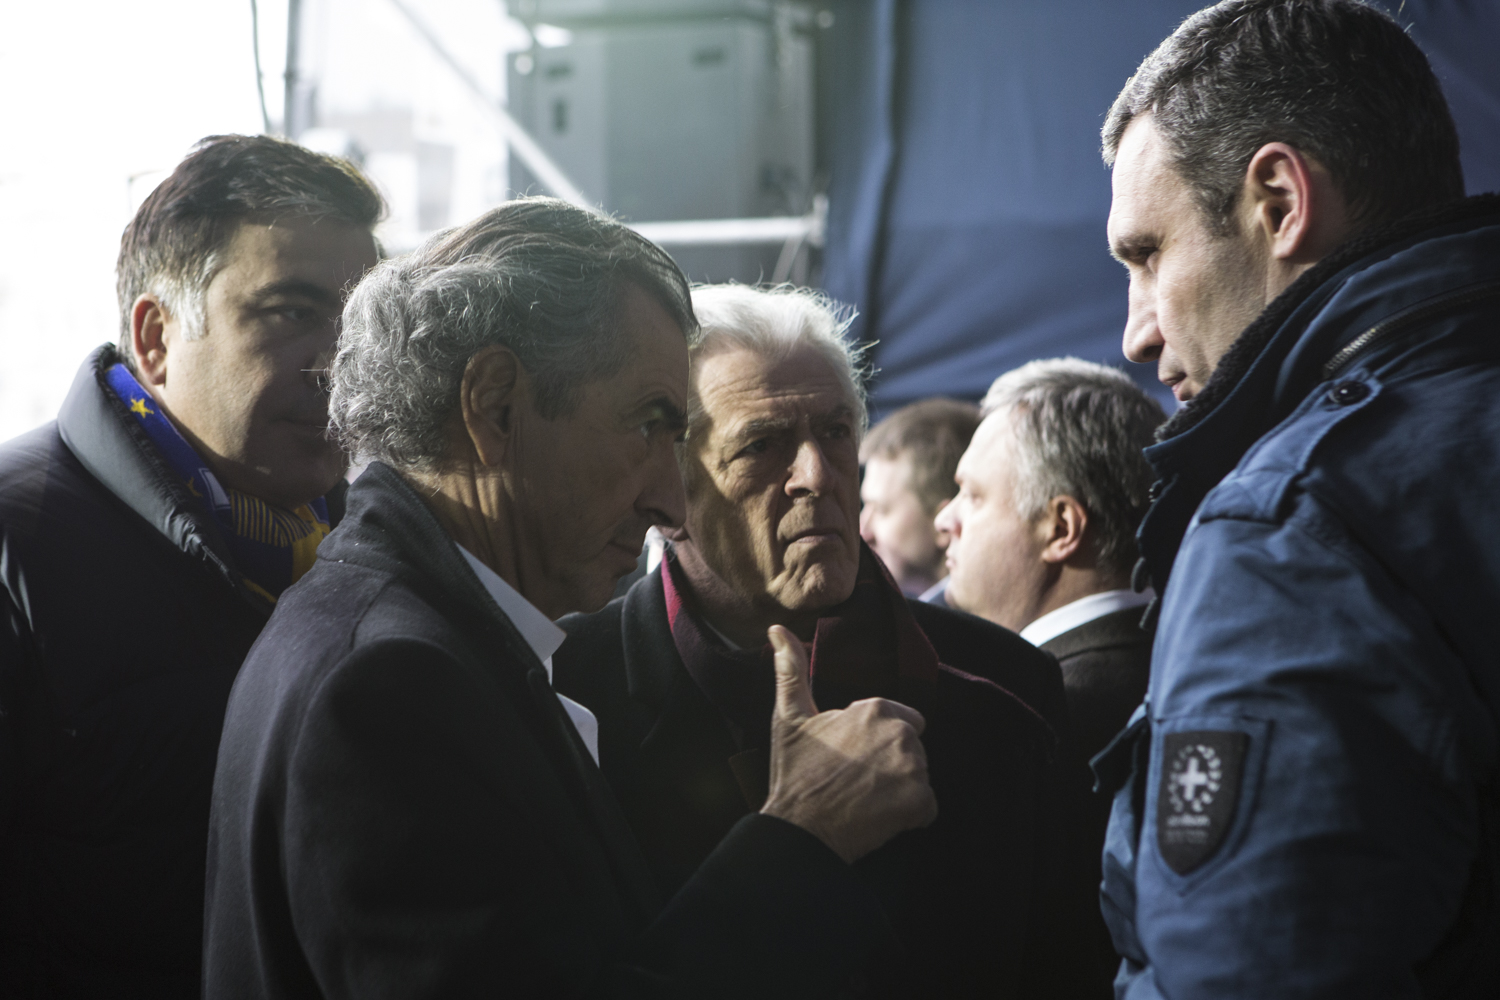 Rencontre entre Bernard-Henri Lévy et Vitali Klitschko sur la tribune de la place Maidan, Kiev, 2 mars 2014, sous le regard de Gilles Hertzog.